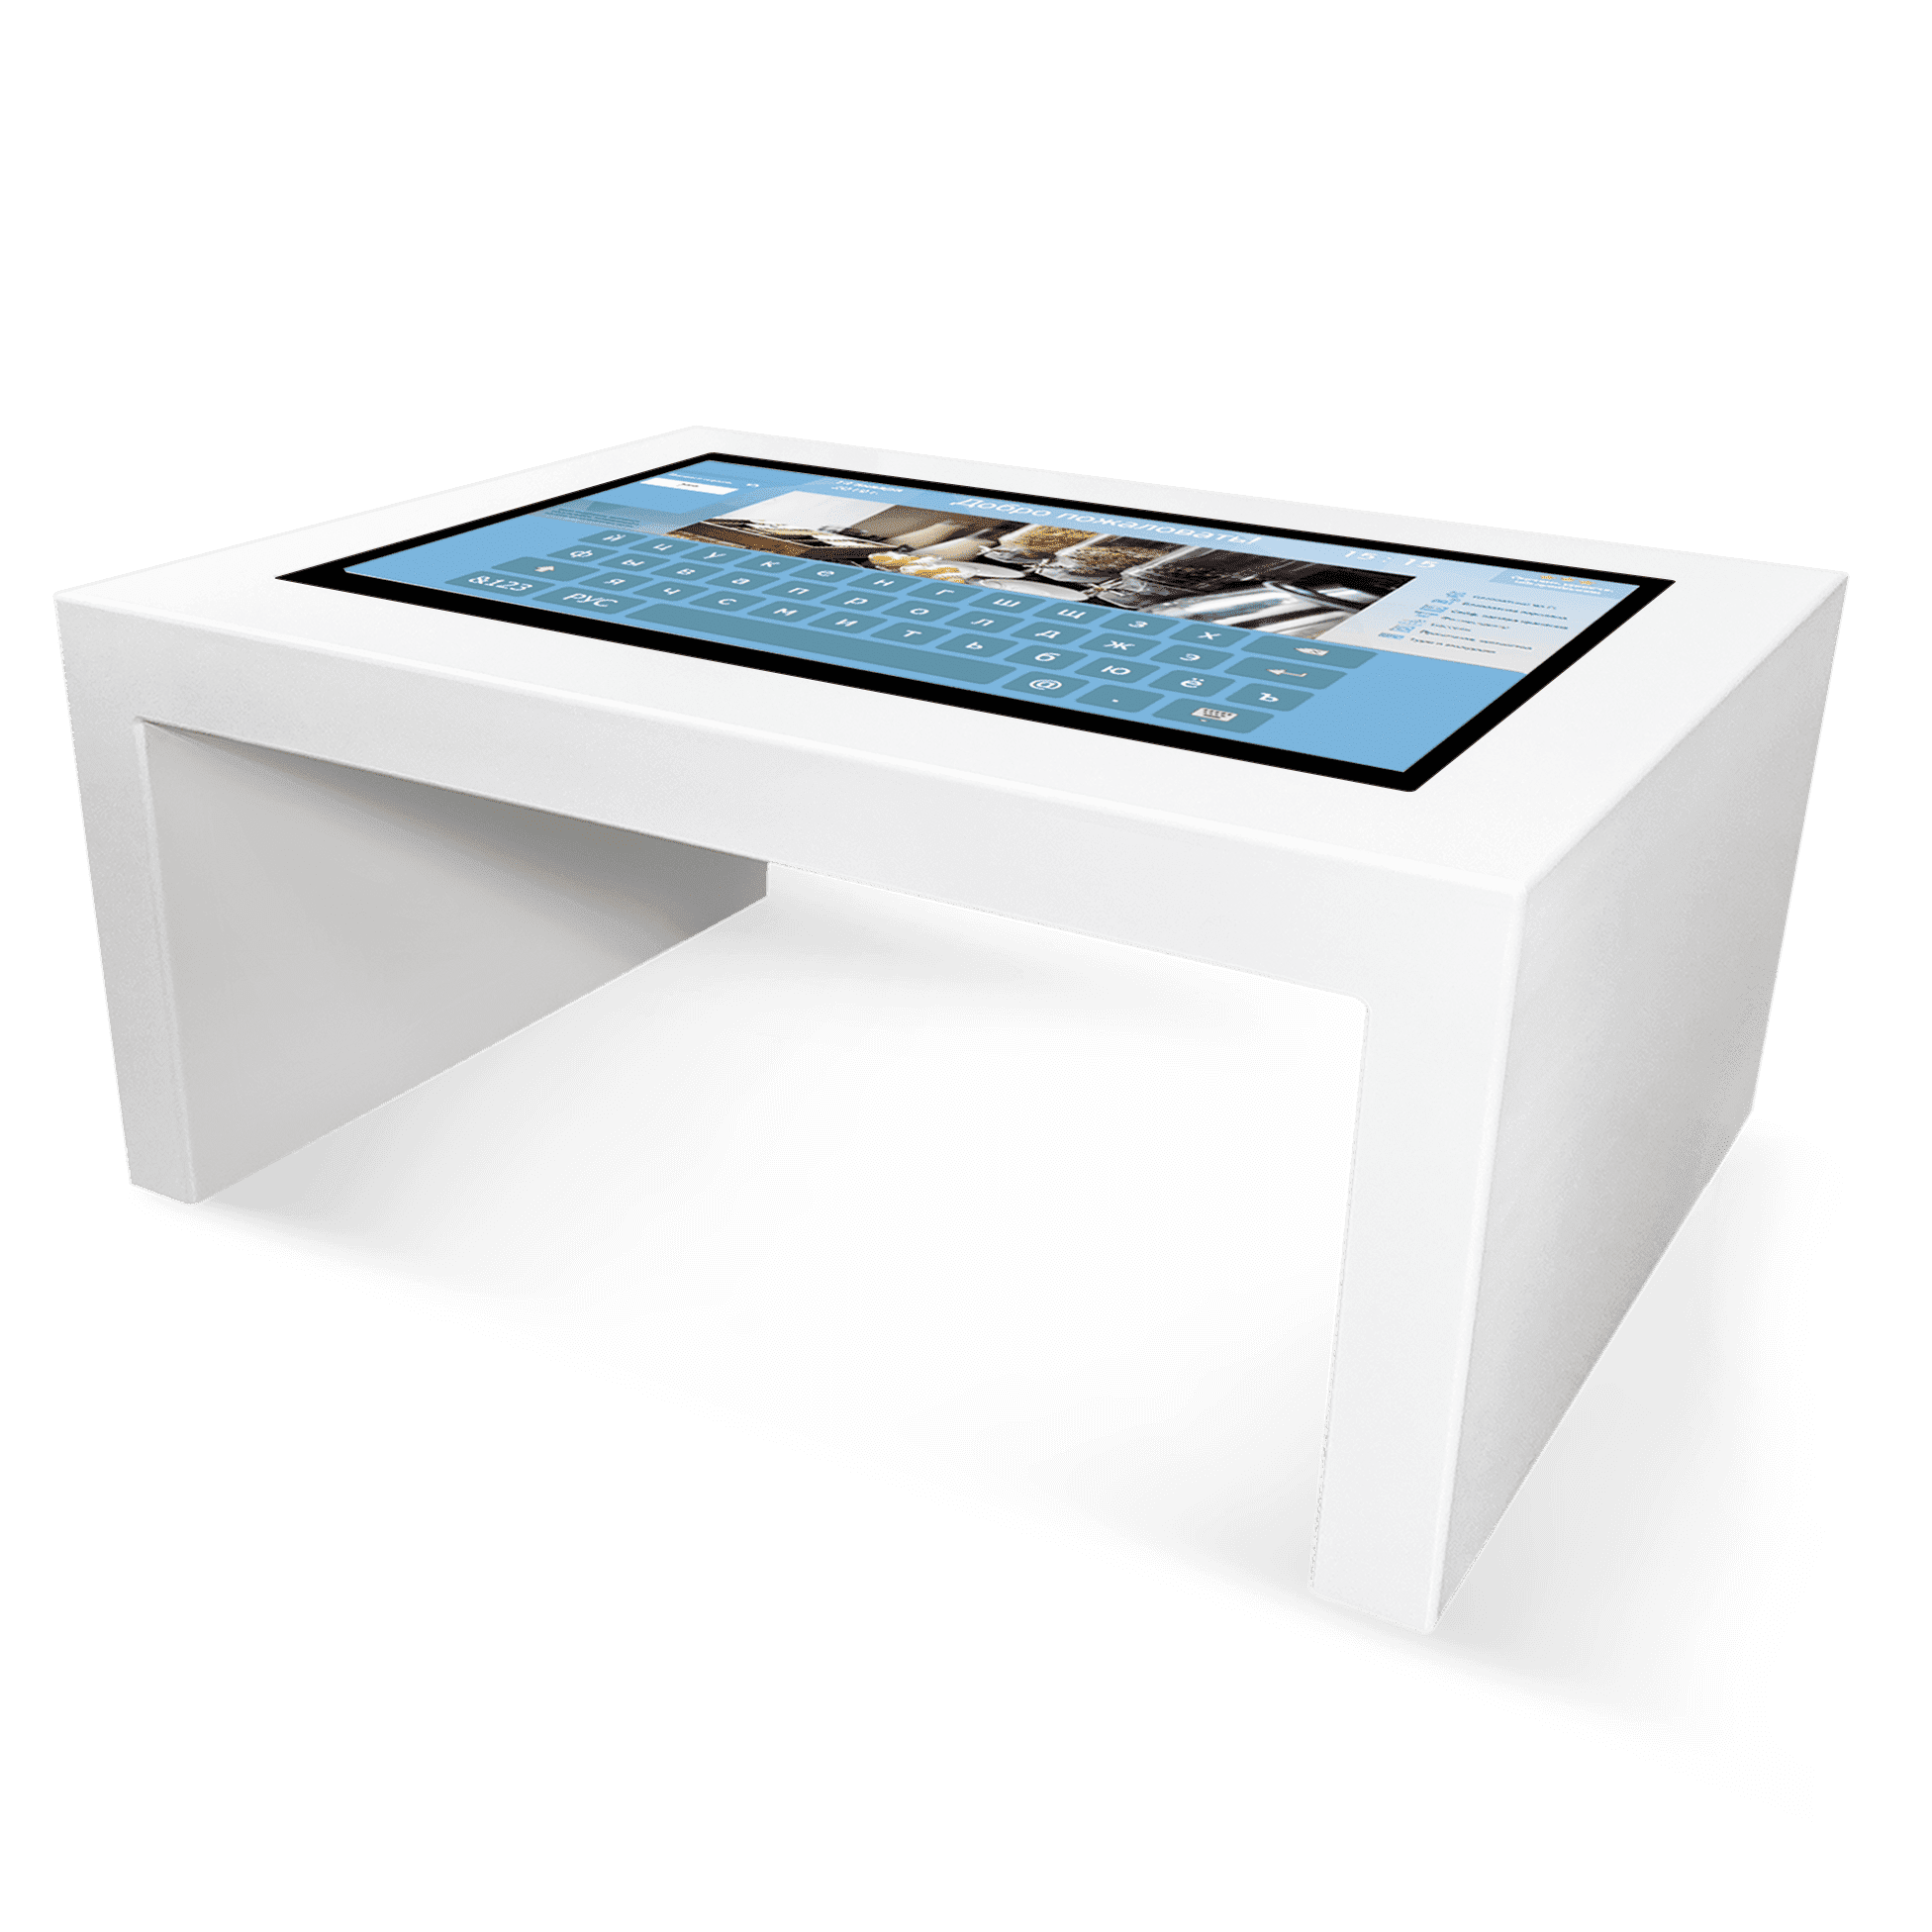 NEXTABLE 55p. Интерактивные столы NEXTABLE V. Интерактивный стол NEXTOUCH 32p. Интерактивный стол детский NEXTOUCH tksnv1pnt32. Интерактивный стол функции